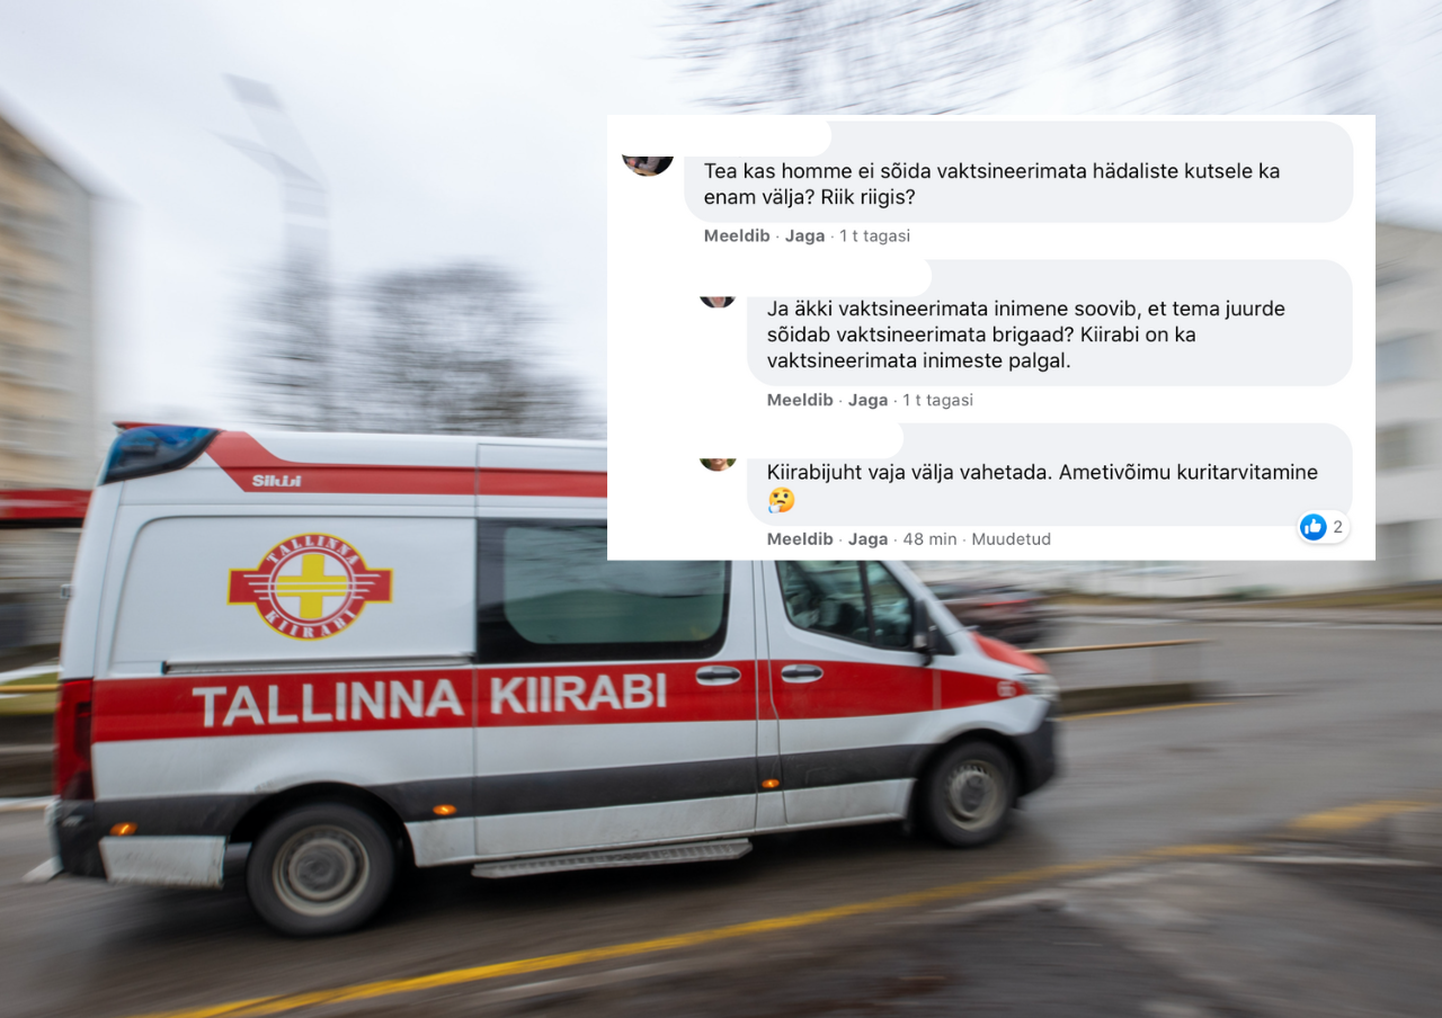 Tallinna kiirabi teade tekitas palju erinevaid reaktsioone.